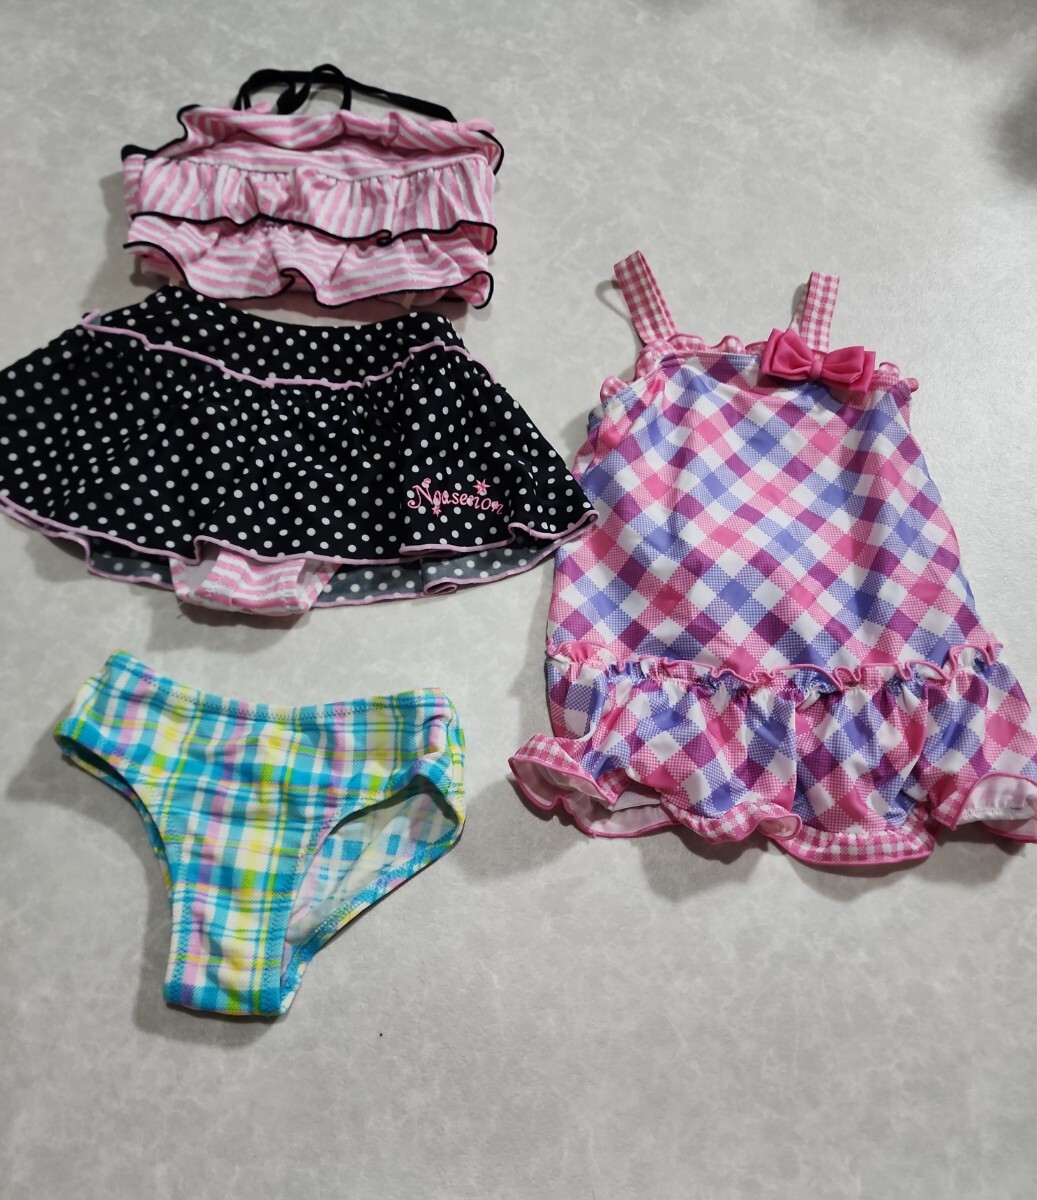 [9] девочка купальный костюм плавание одежда One-piece купальный костюм раздельный комплект продажа размер 100.120